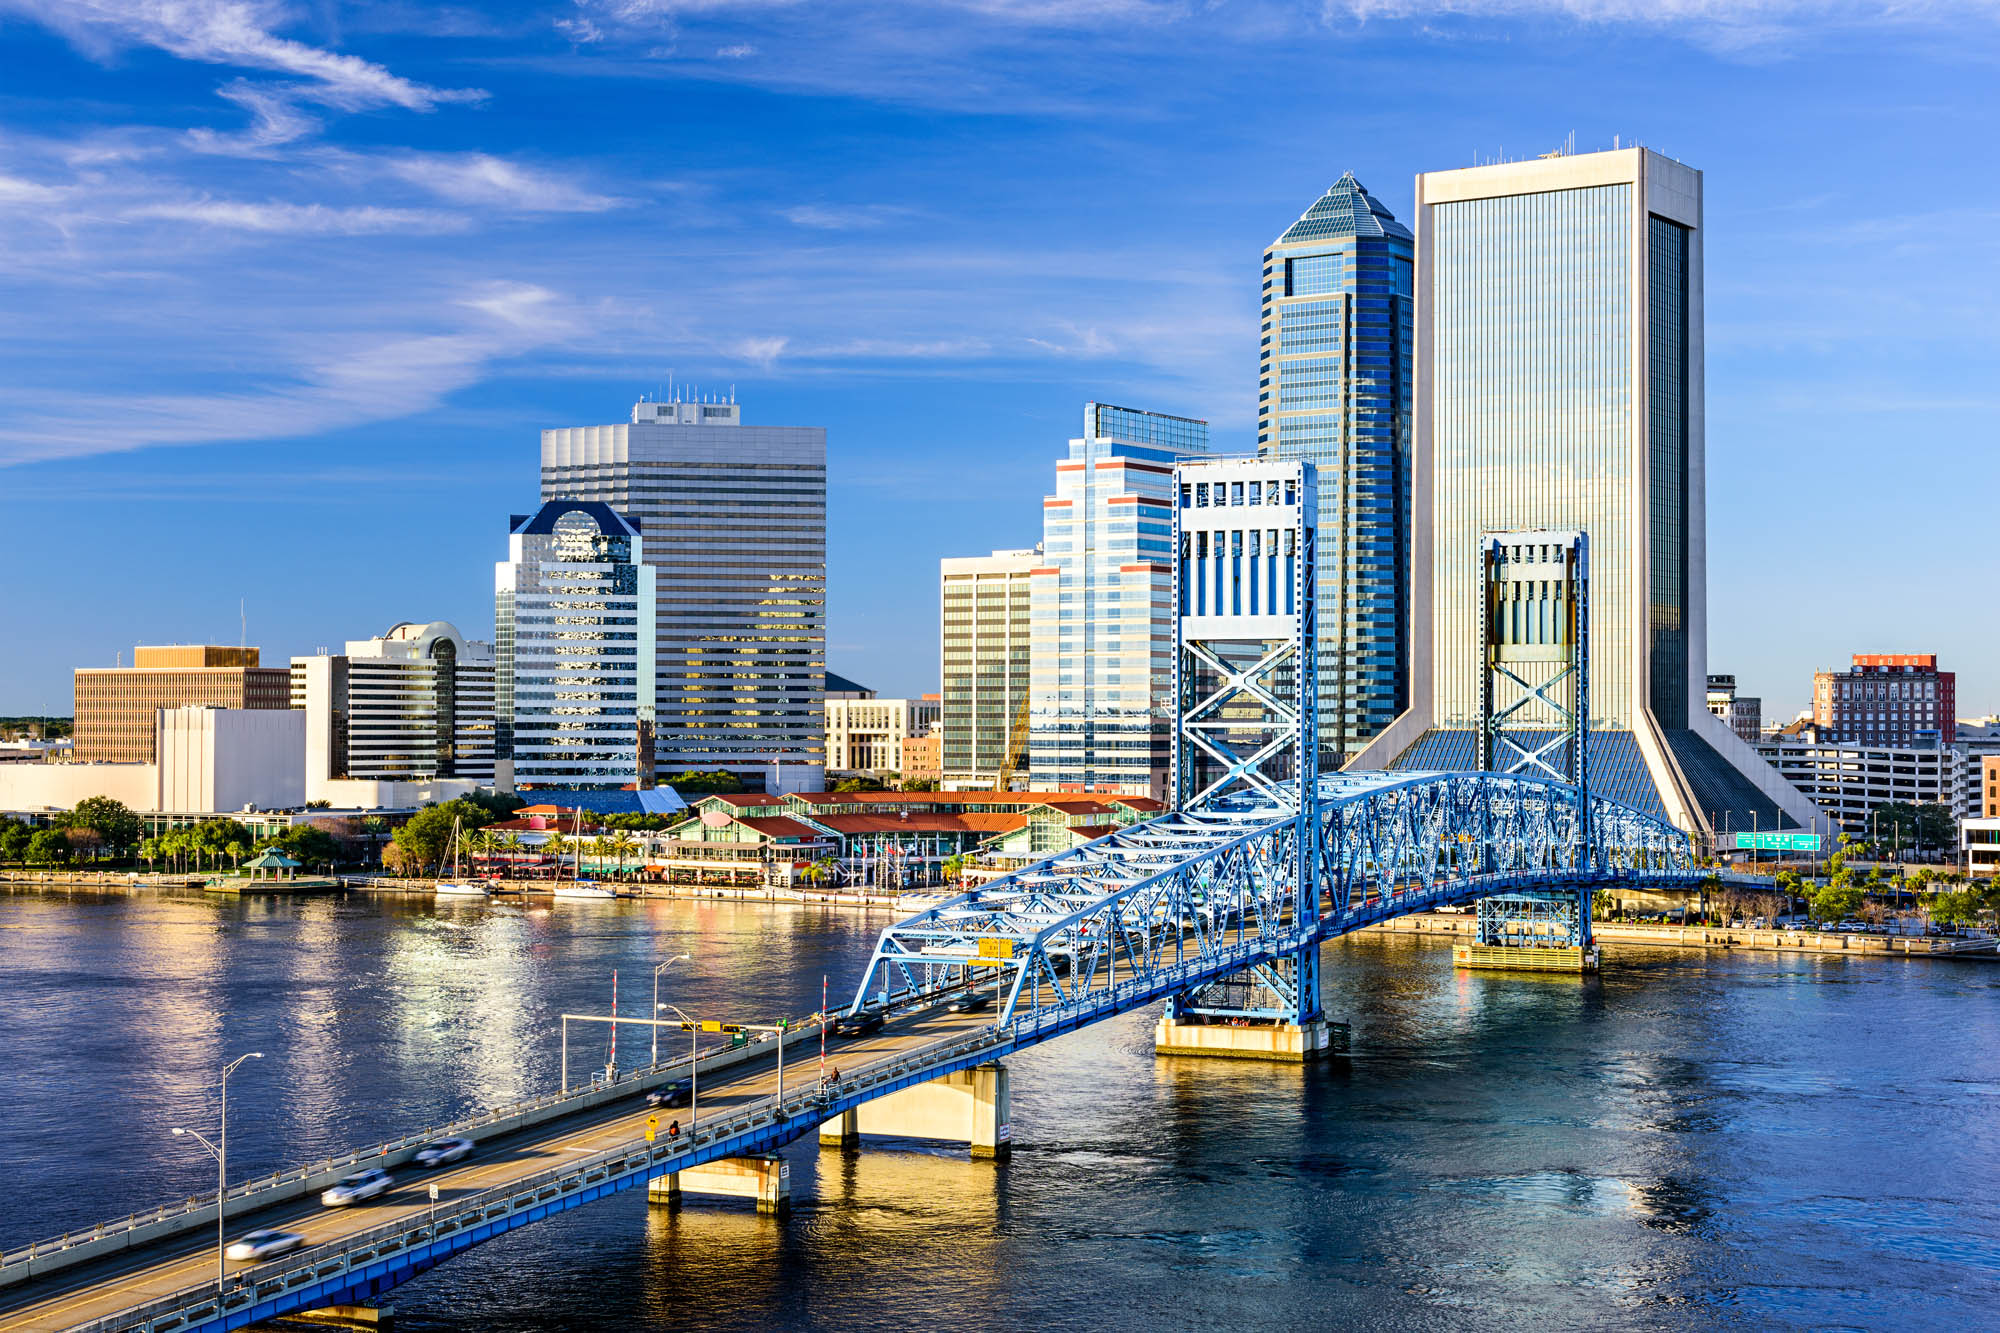 Florida fue en 2020 el tercer estado al que más personas se mudaron